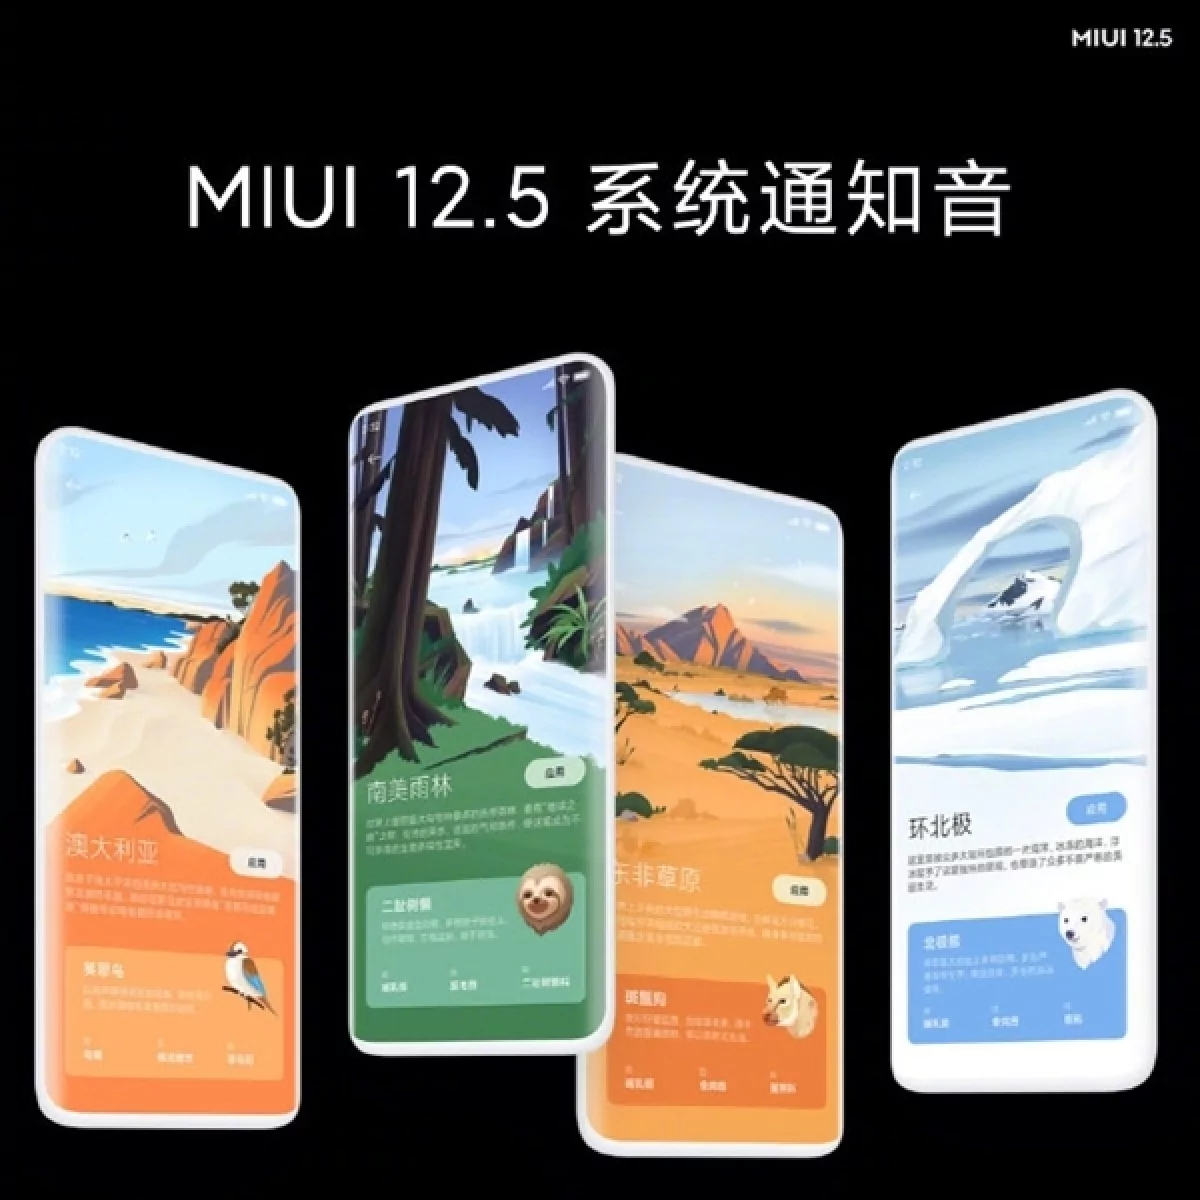 gsmarena 005 8 | MIUI 12.5 | Xiaomi เปิดตัว MIUI 12.5 ที่รวดเร็วขึ้น ปลอดภัยยิ่งขึ้นกว่าเดิม